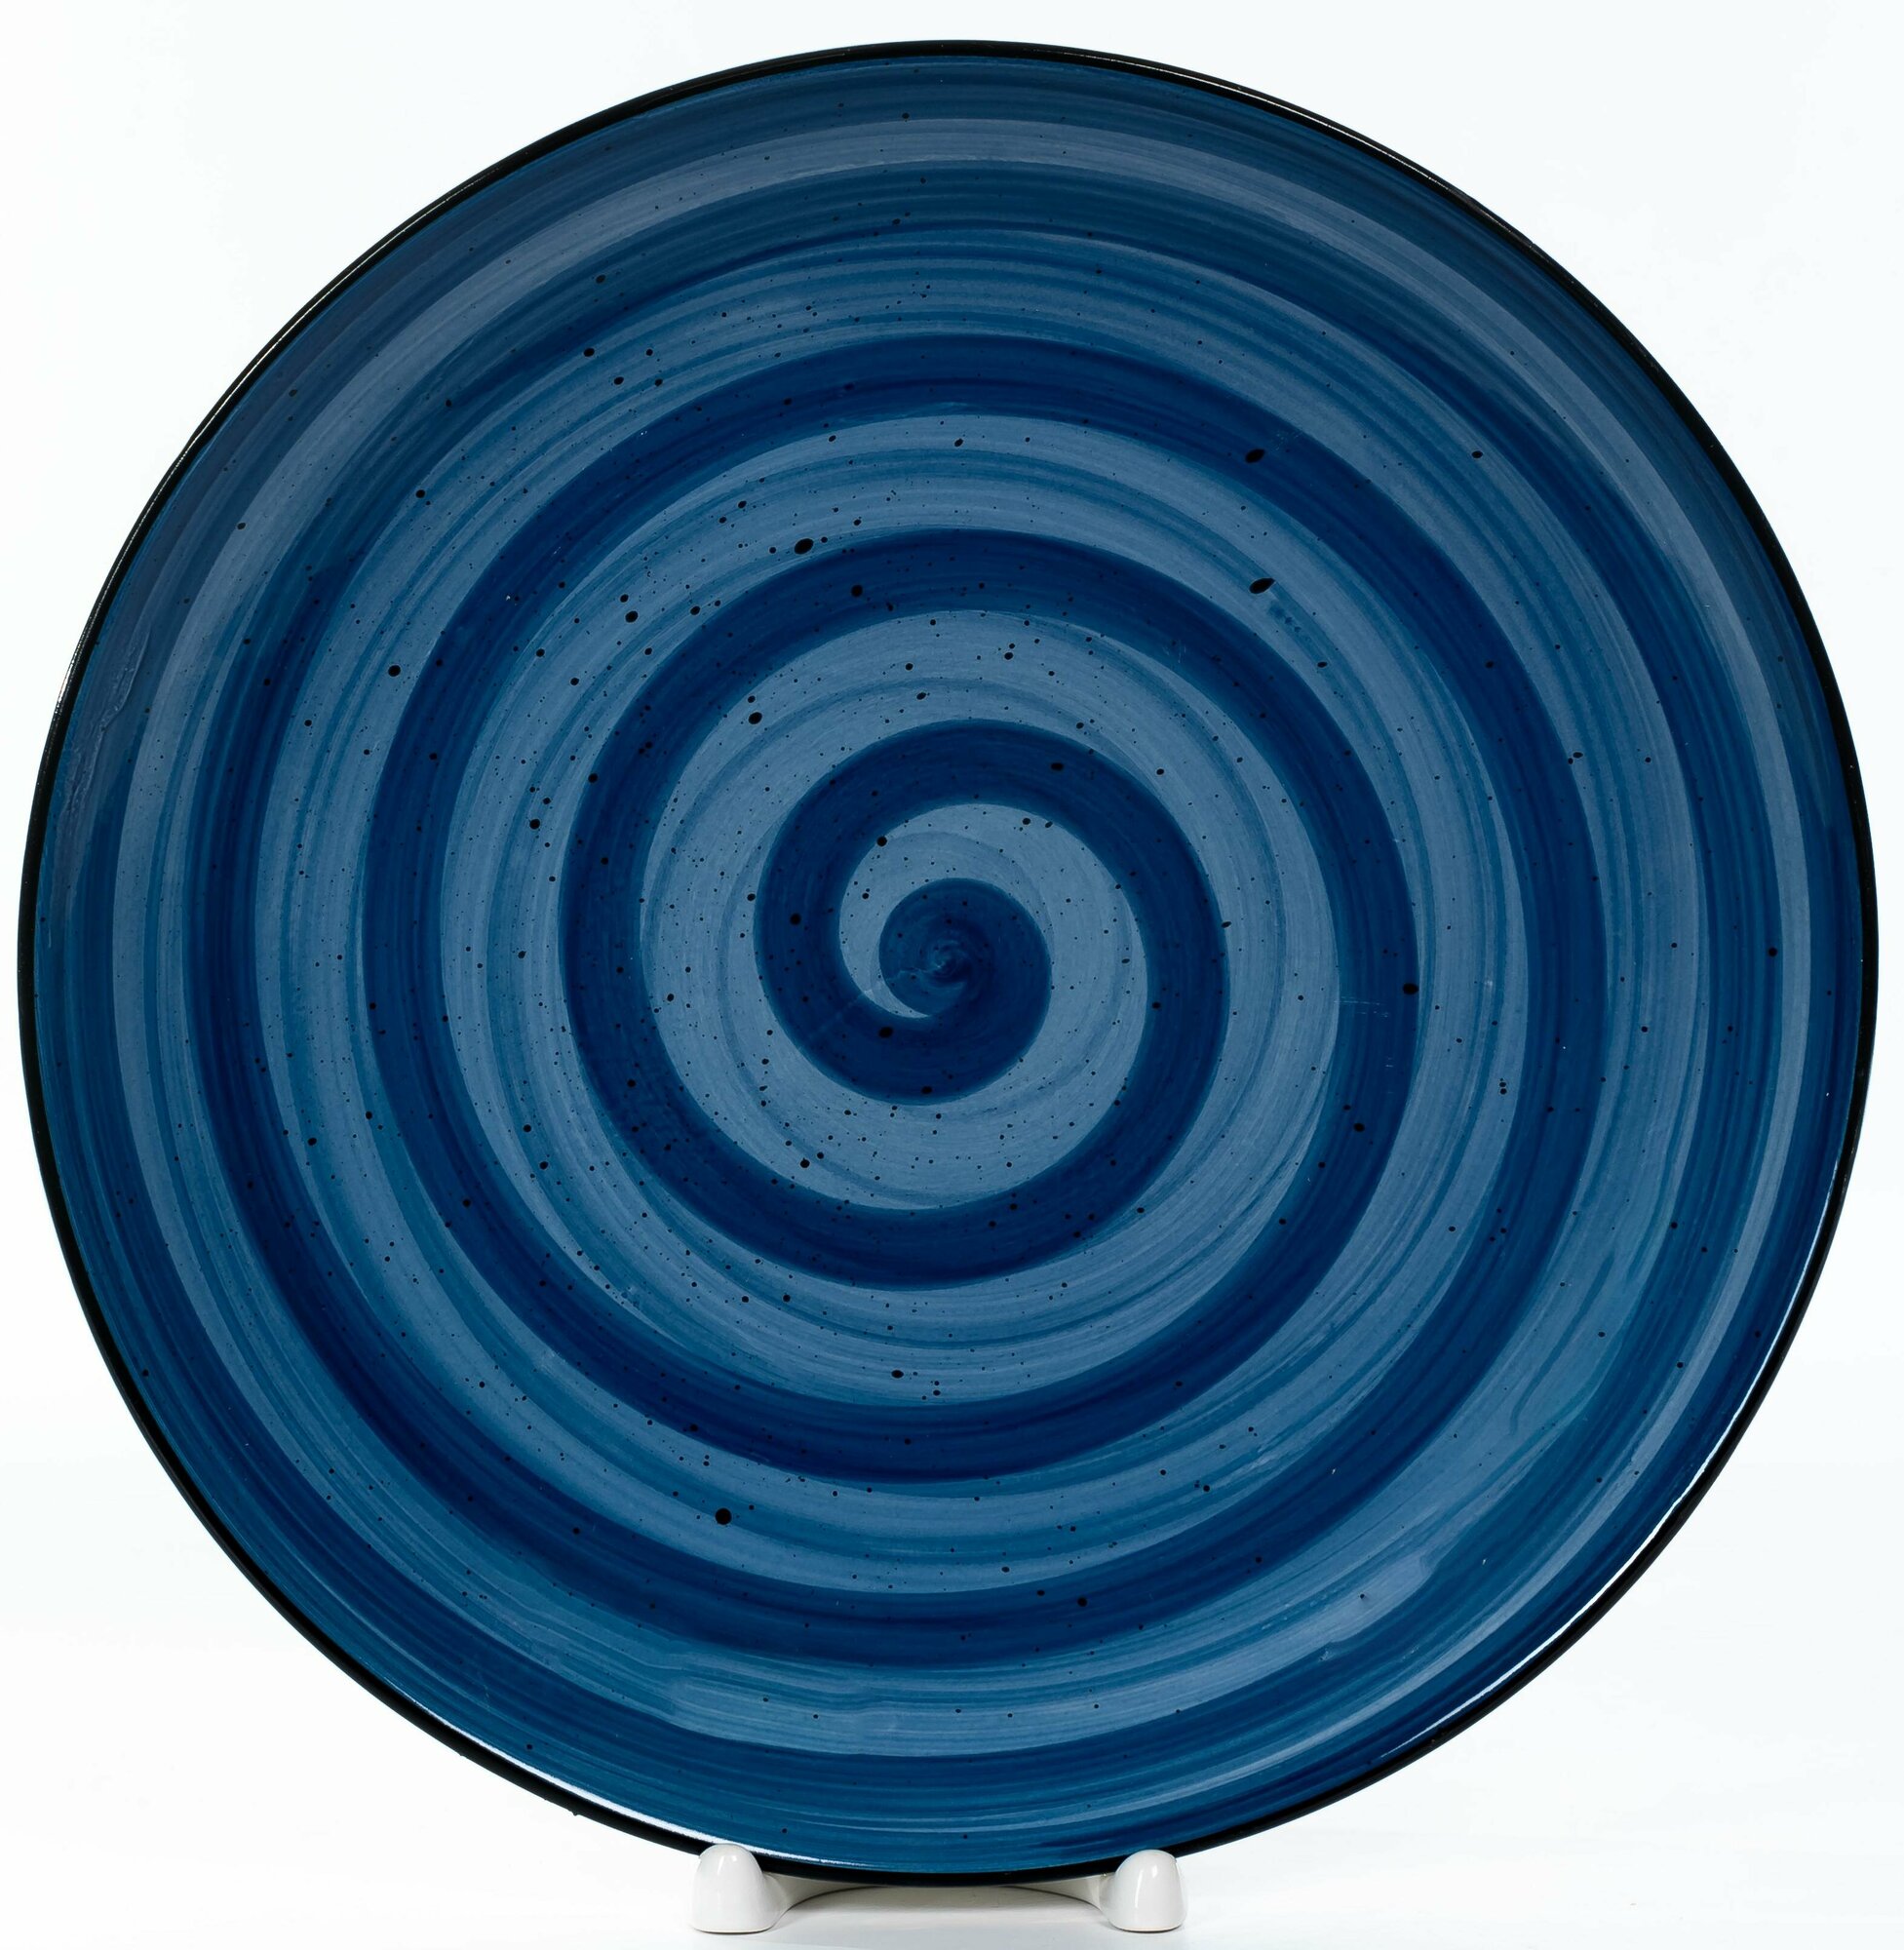 "Керамическая тарелка ALAT Home" 27х27, синяя, круглая, для обедов и праздников